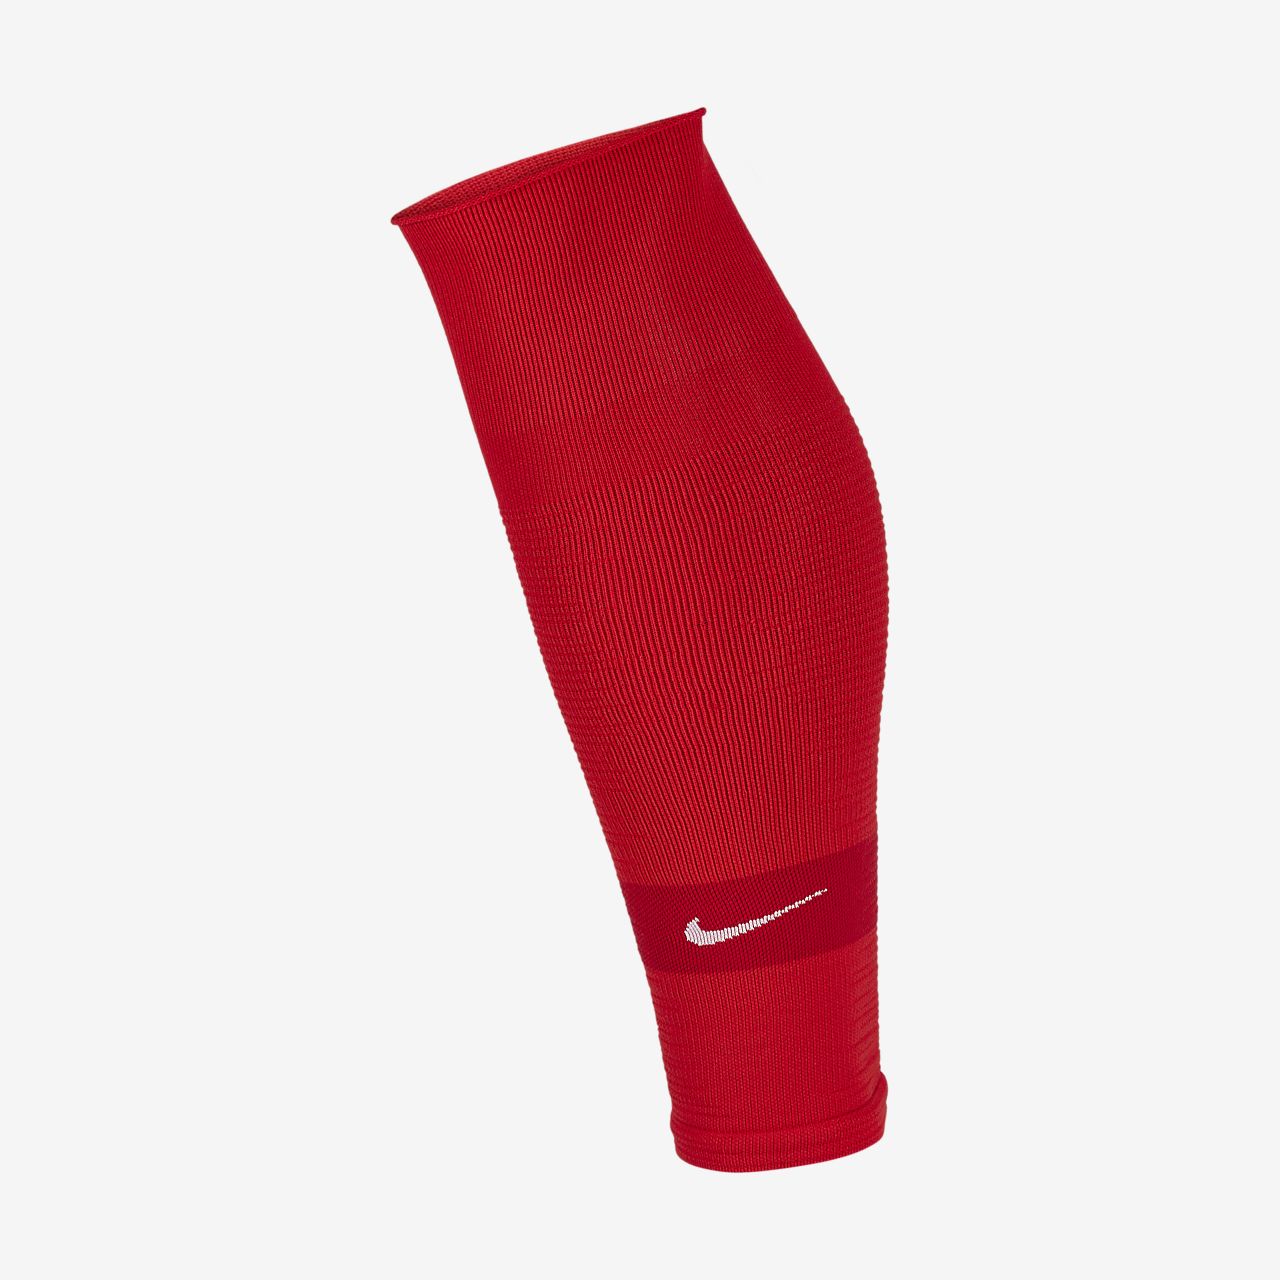 leg sleeve football socks